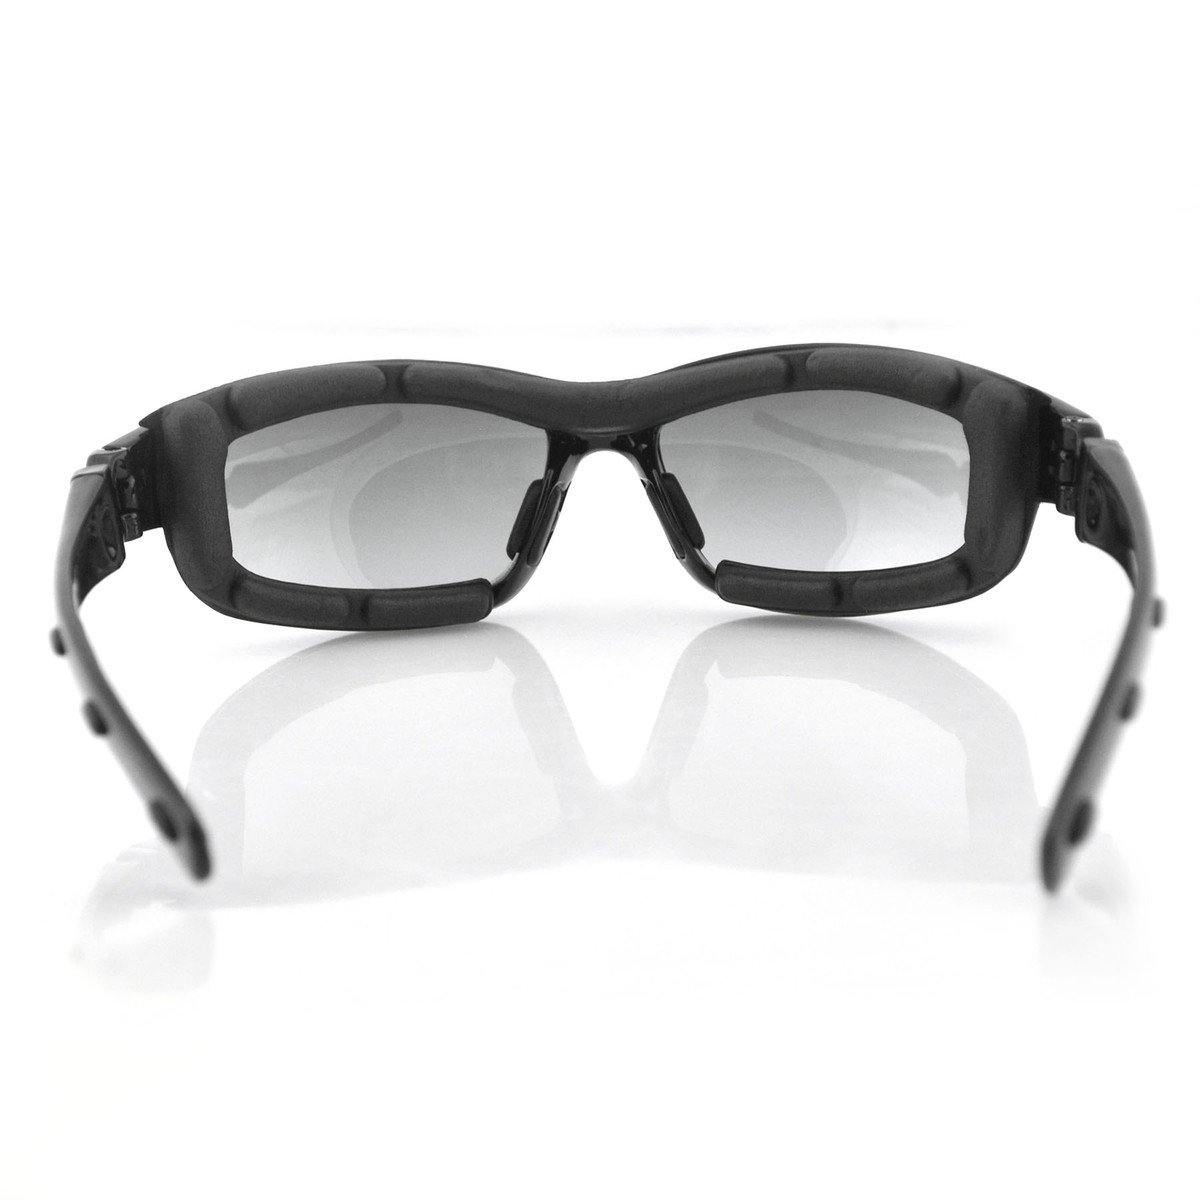 Bobster Road Hog II Convertible Sunglasses, Black Frame, 4 Sets of Polycarbonate Lenses, M - American Legend Rider